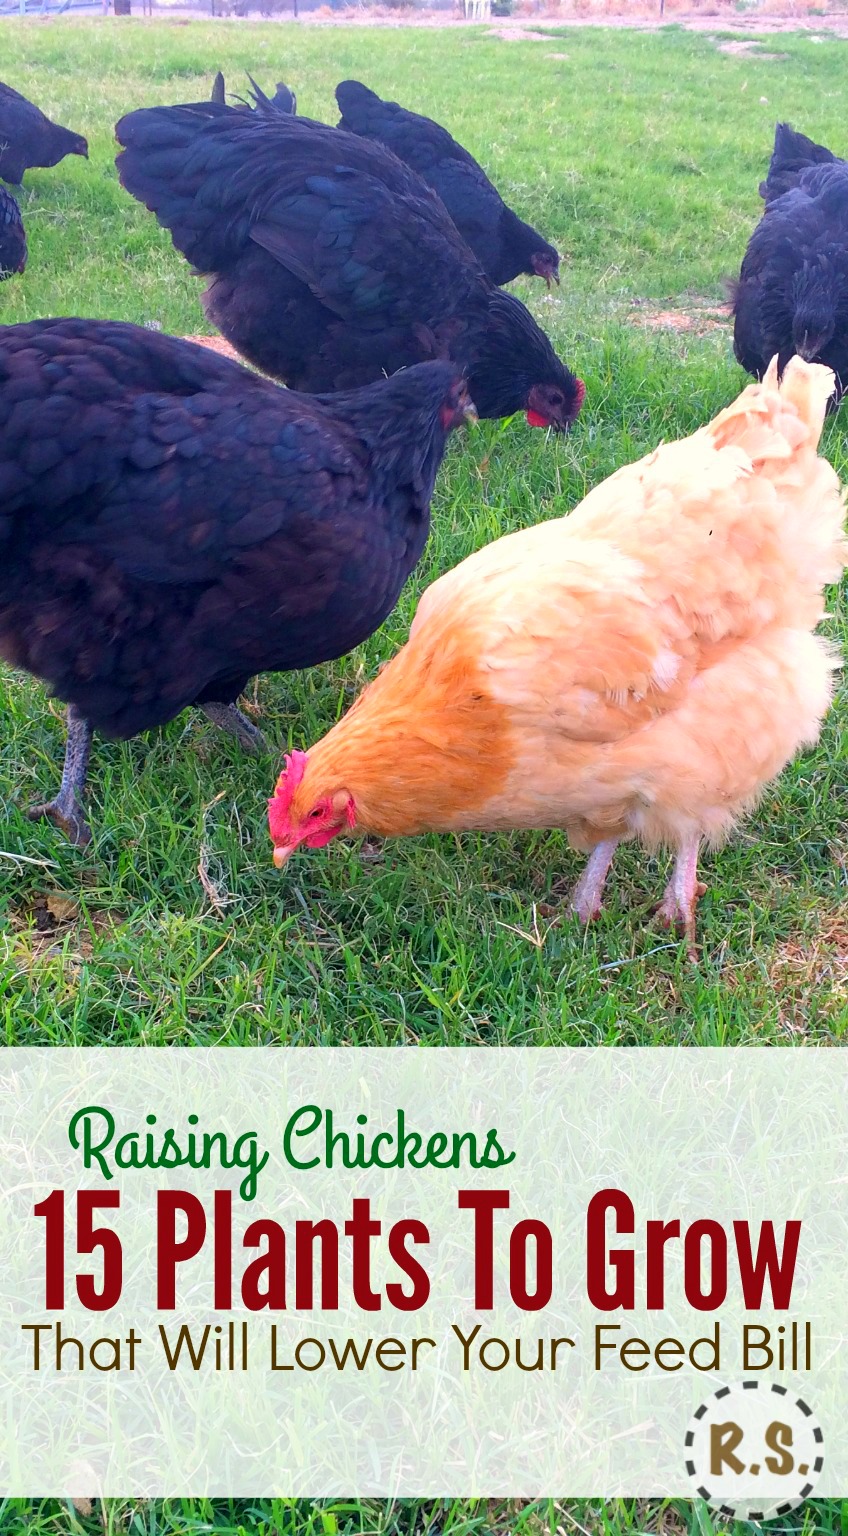 groeien uw achtertuin kip voedsel in een DIY meerjarige permacultuur tuin. Gratis voedsel schaduw voor de kippen in de eetbare landschapsarchitectuur direct buiten hun coop. Het kweken van kippenvoer bespaart u geld.